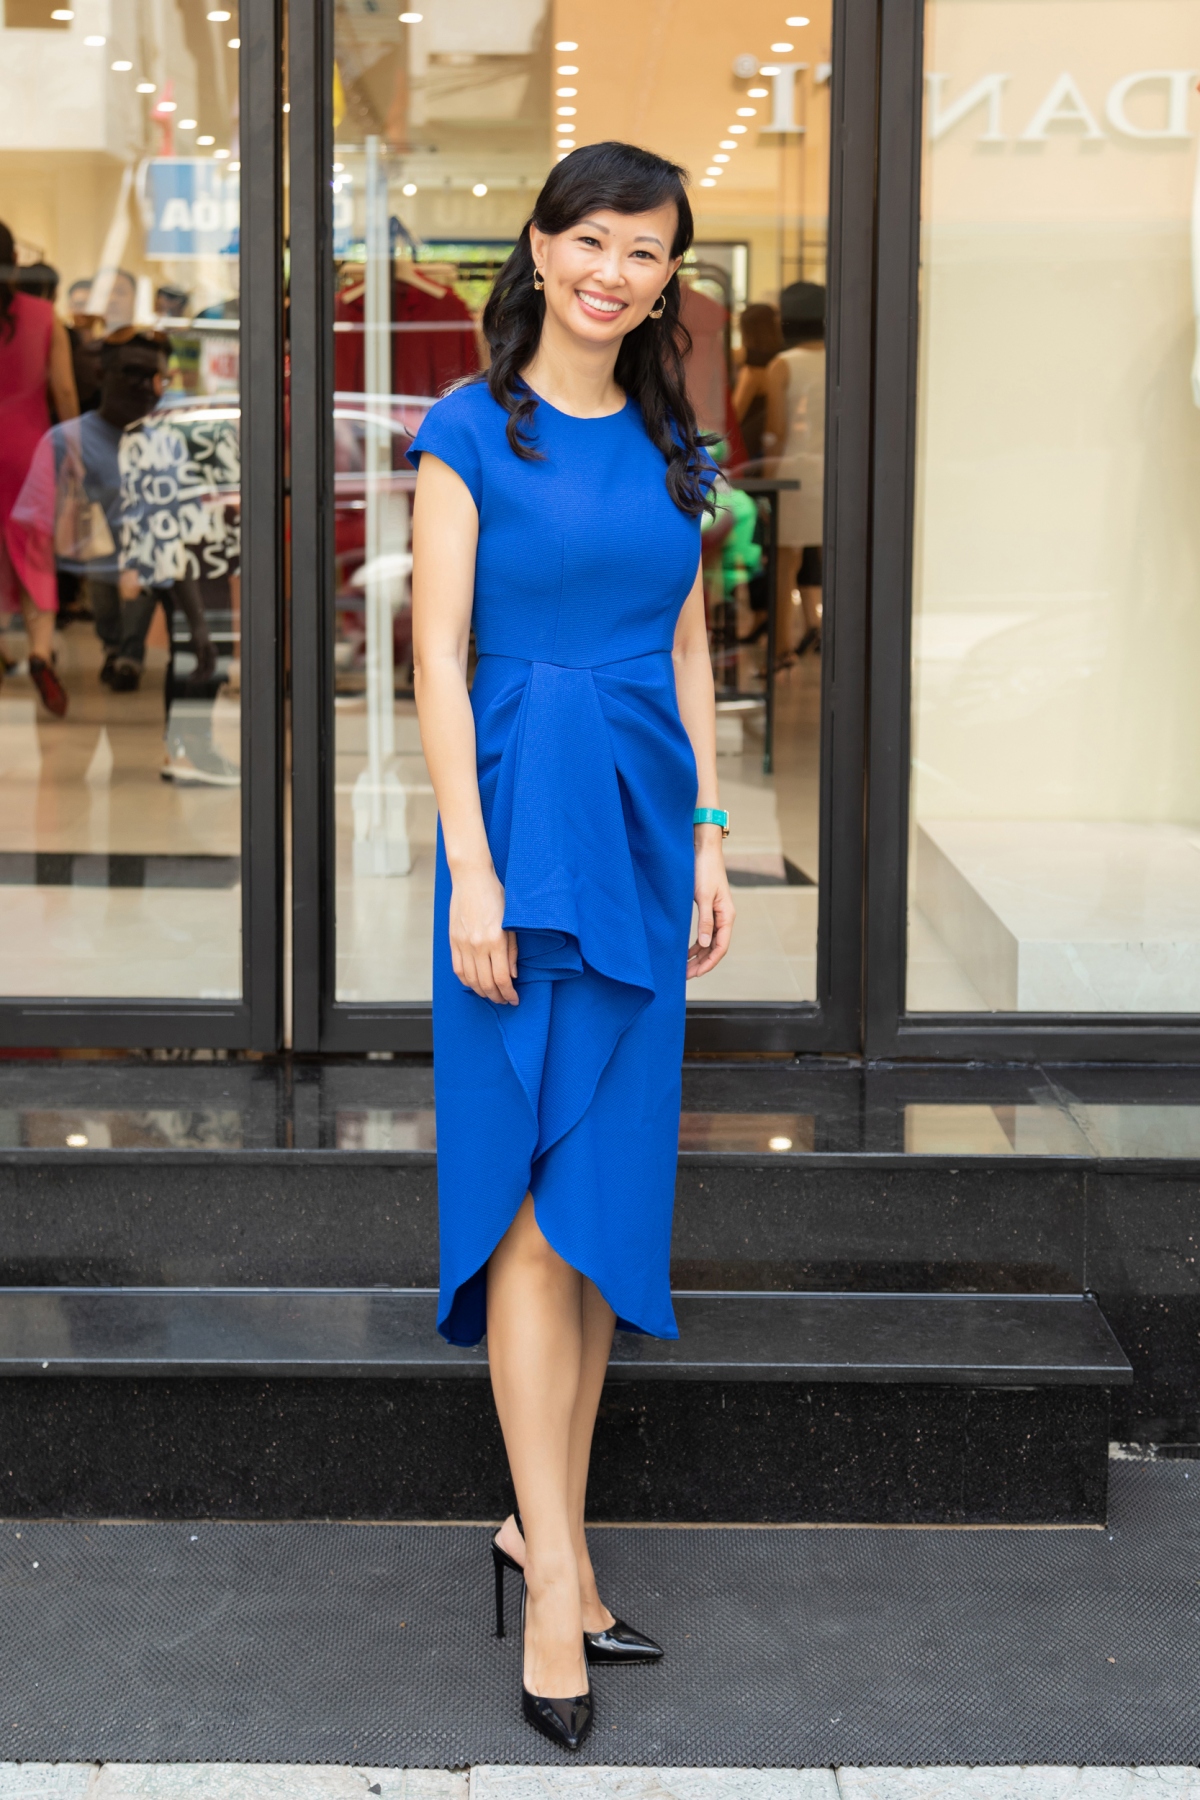 Doanh nhân Thái Vân Linh xuất hiện rạng rỡ trong chiếc váy màu xanh coban với chân váy theo cấu trúc bất đối xứng được tạo nên từ những đường gấp nếp tinh tế - thế mạnh của Đỗ Mạnh Cường.